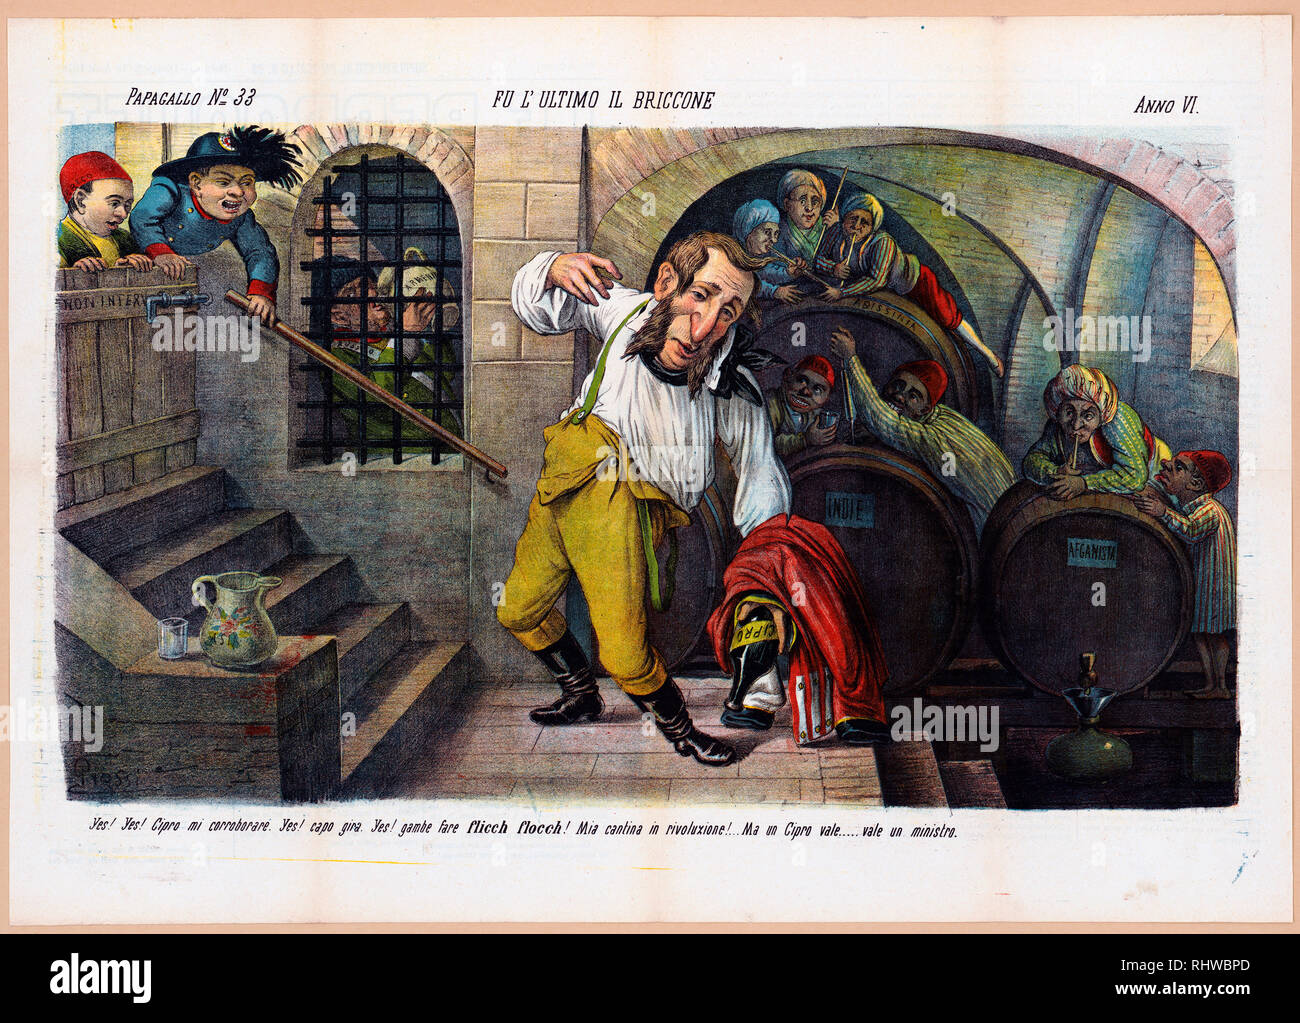 Italienischen politischen Karikatur zeigt ein betrunkener Engländer kämpfen aufrecht, an der Basis der eine Treppe in einem Weinkeller zu bleiben, hält er eine leere Flasche mit der Aufschrift "Cipro" an seiner Seite, hinter ihm ist ein Weinfass mit der Aufschrift "Indie" mit zwei Männern mit der Aufschrift "AYAH" und "Emir "Extrahieren von Wein, ein Weinfass mit der Beschriftung 'Afganista' mit zwei Männern mit der Aufschrift "DI" und "Indigens', und ein Fass im Hintergrund mit der Aufschrift "Abissinia', von denen drei Männer trinken Wein sind. Stockfoto